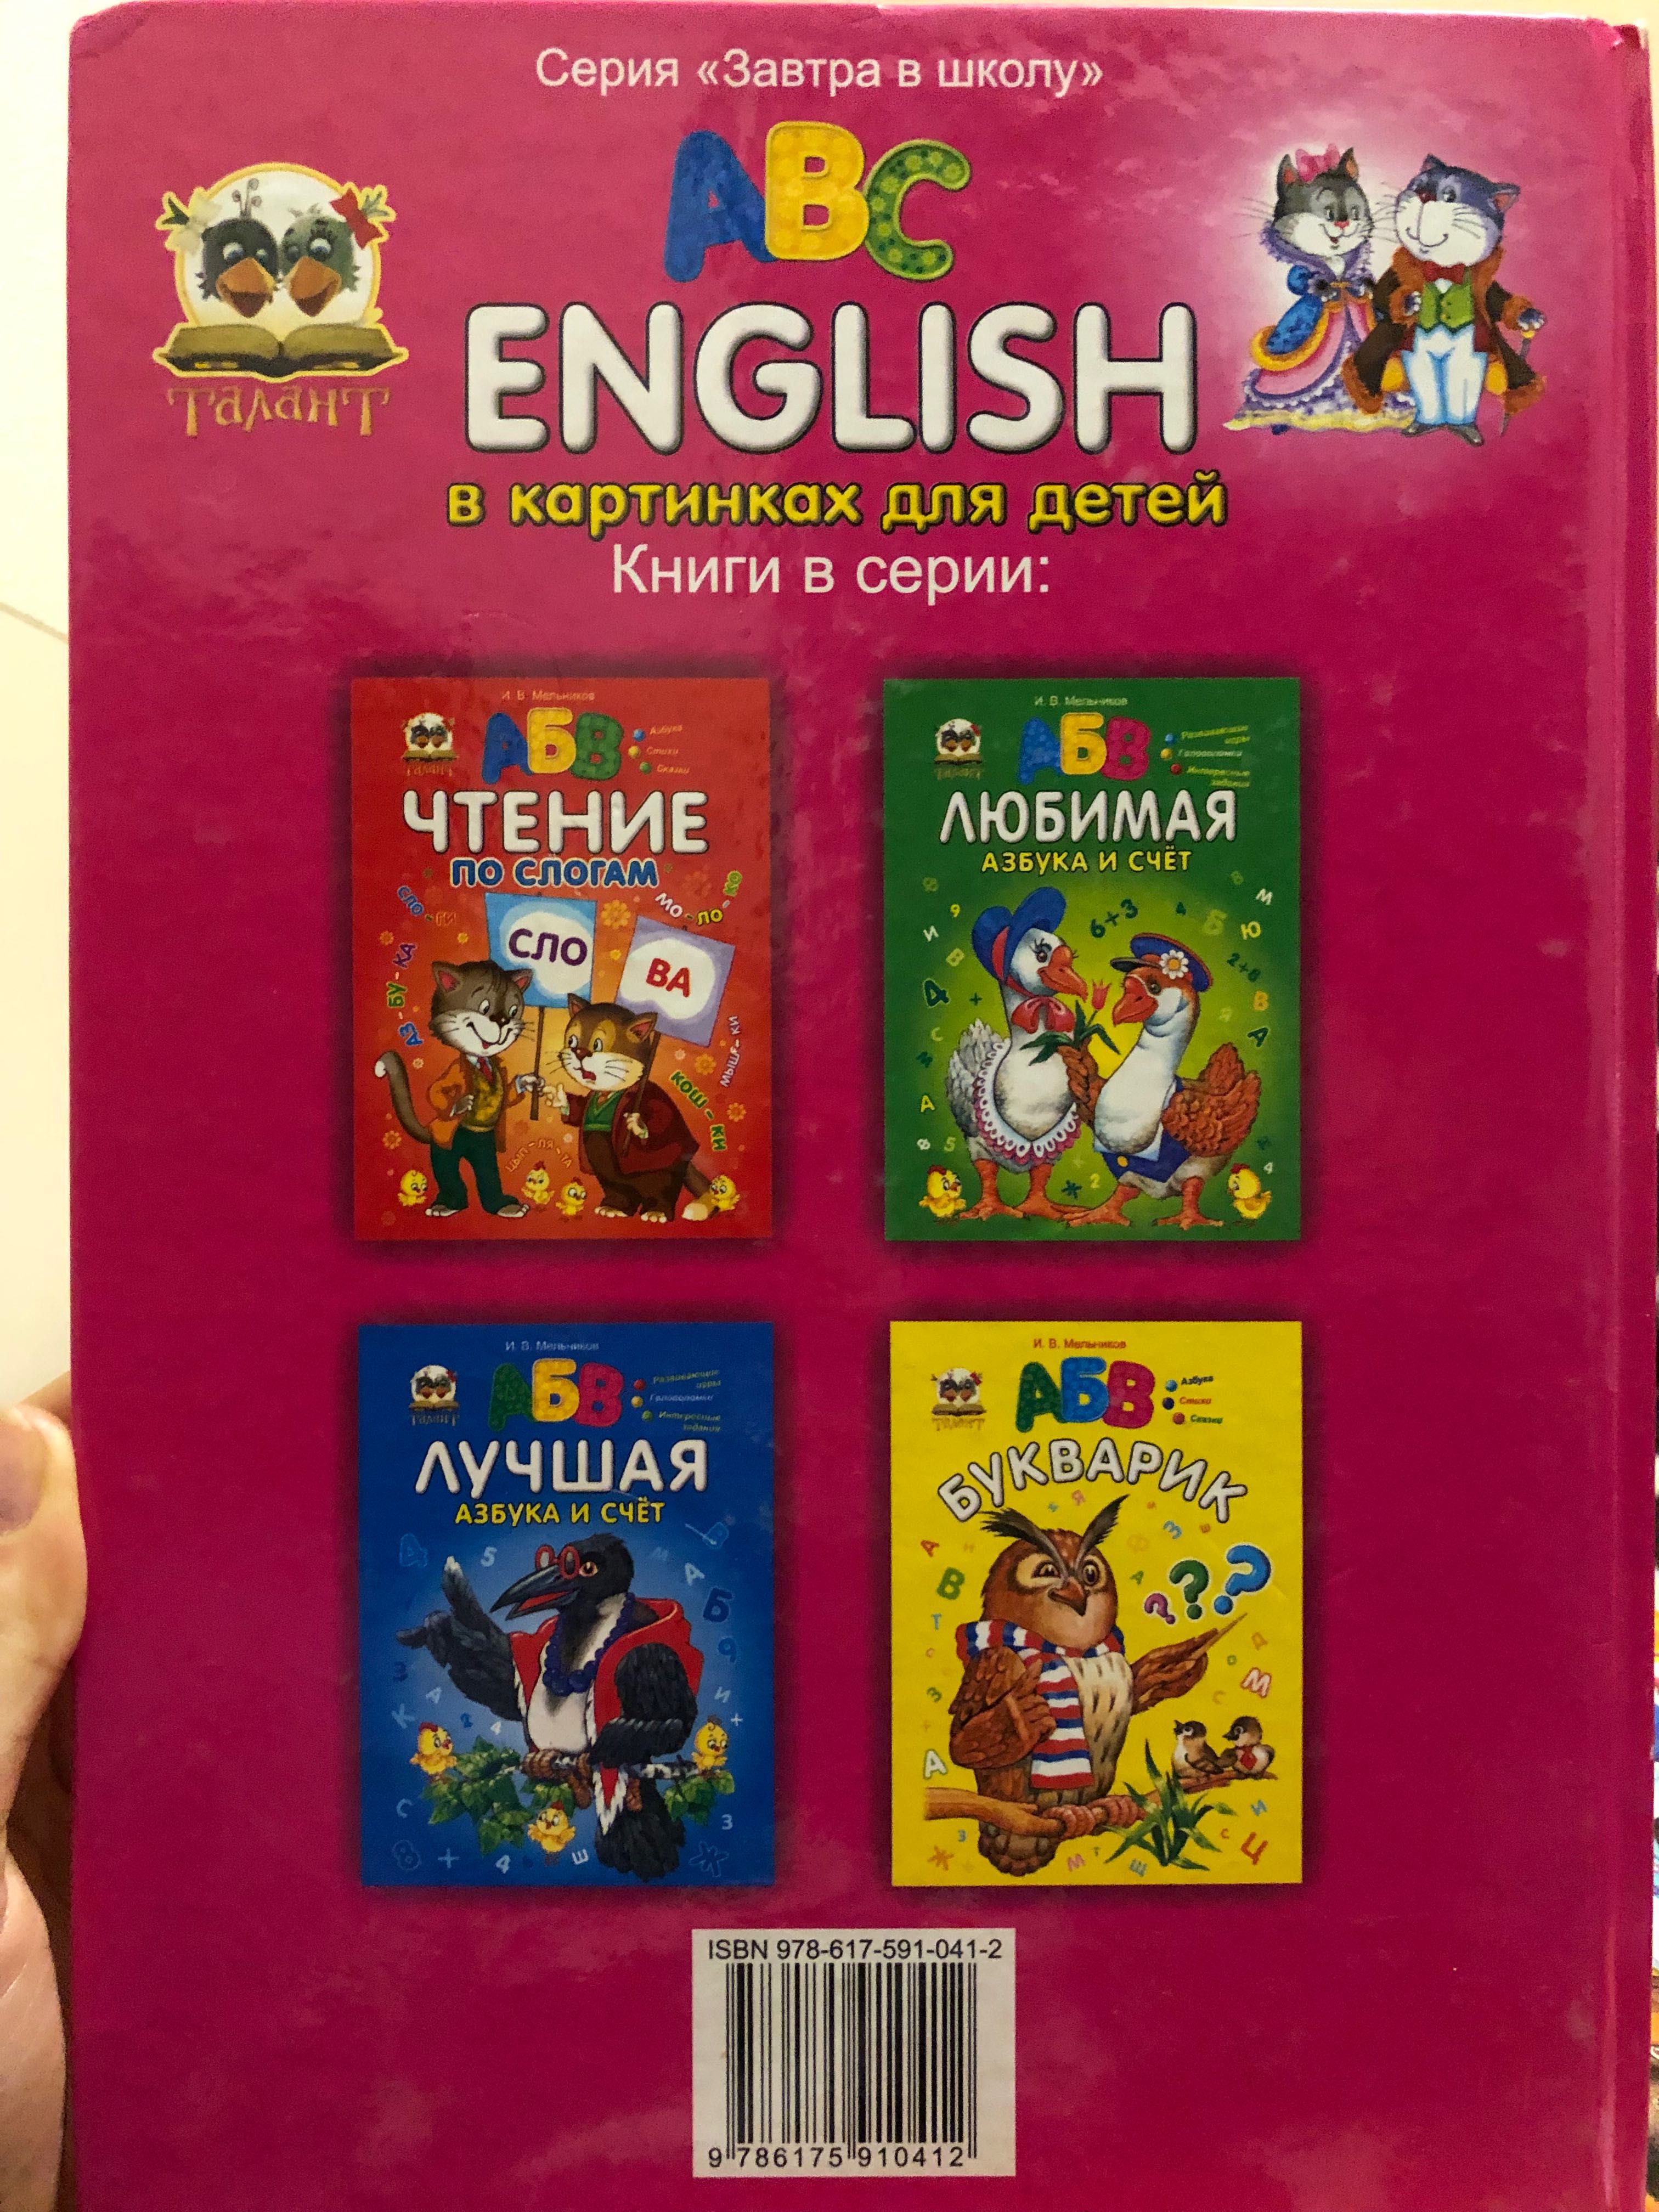 Английская детская книга для обучения